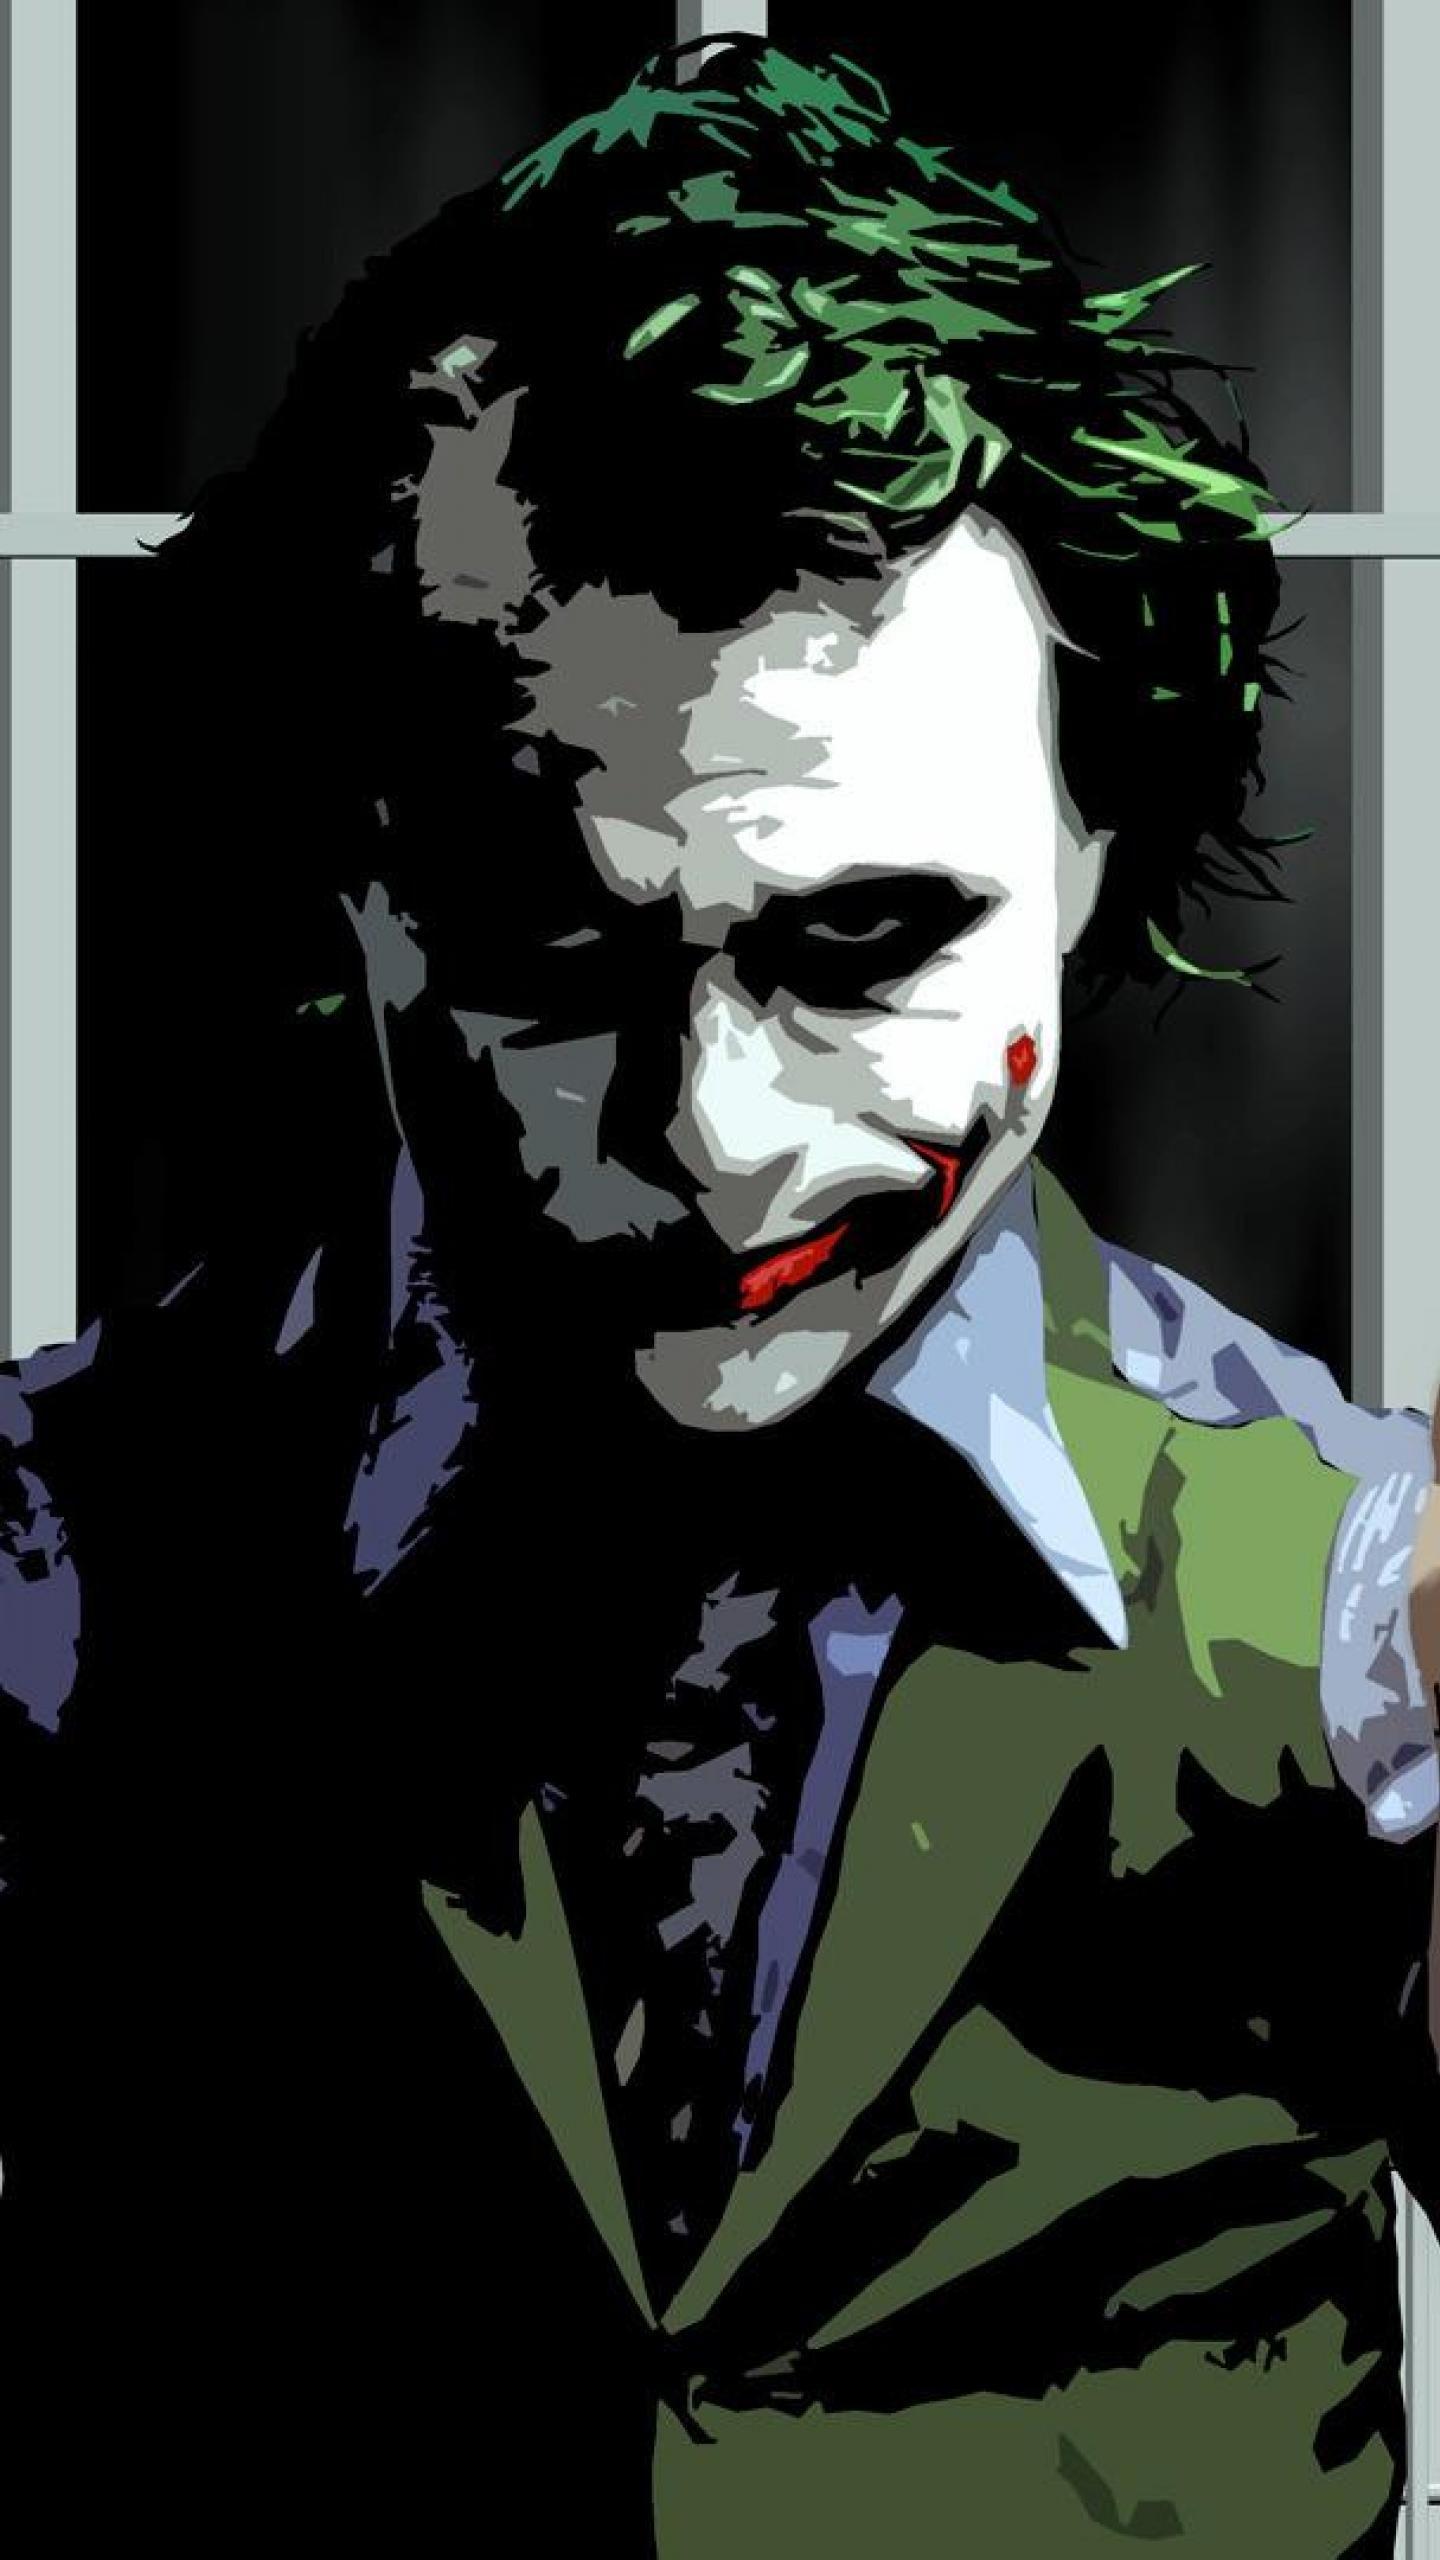 35 Gambar Wallpaper Joker Hd Untuk Android terbaru 2020 - Miuiku